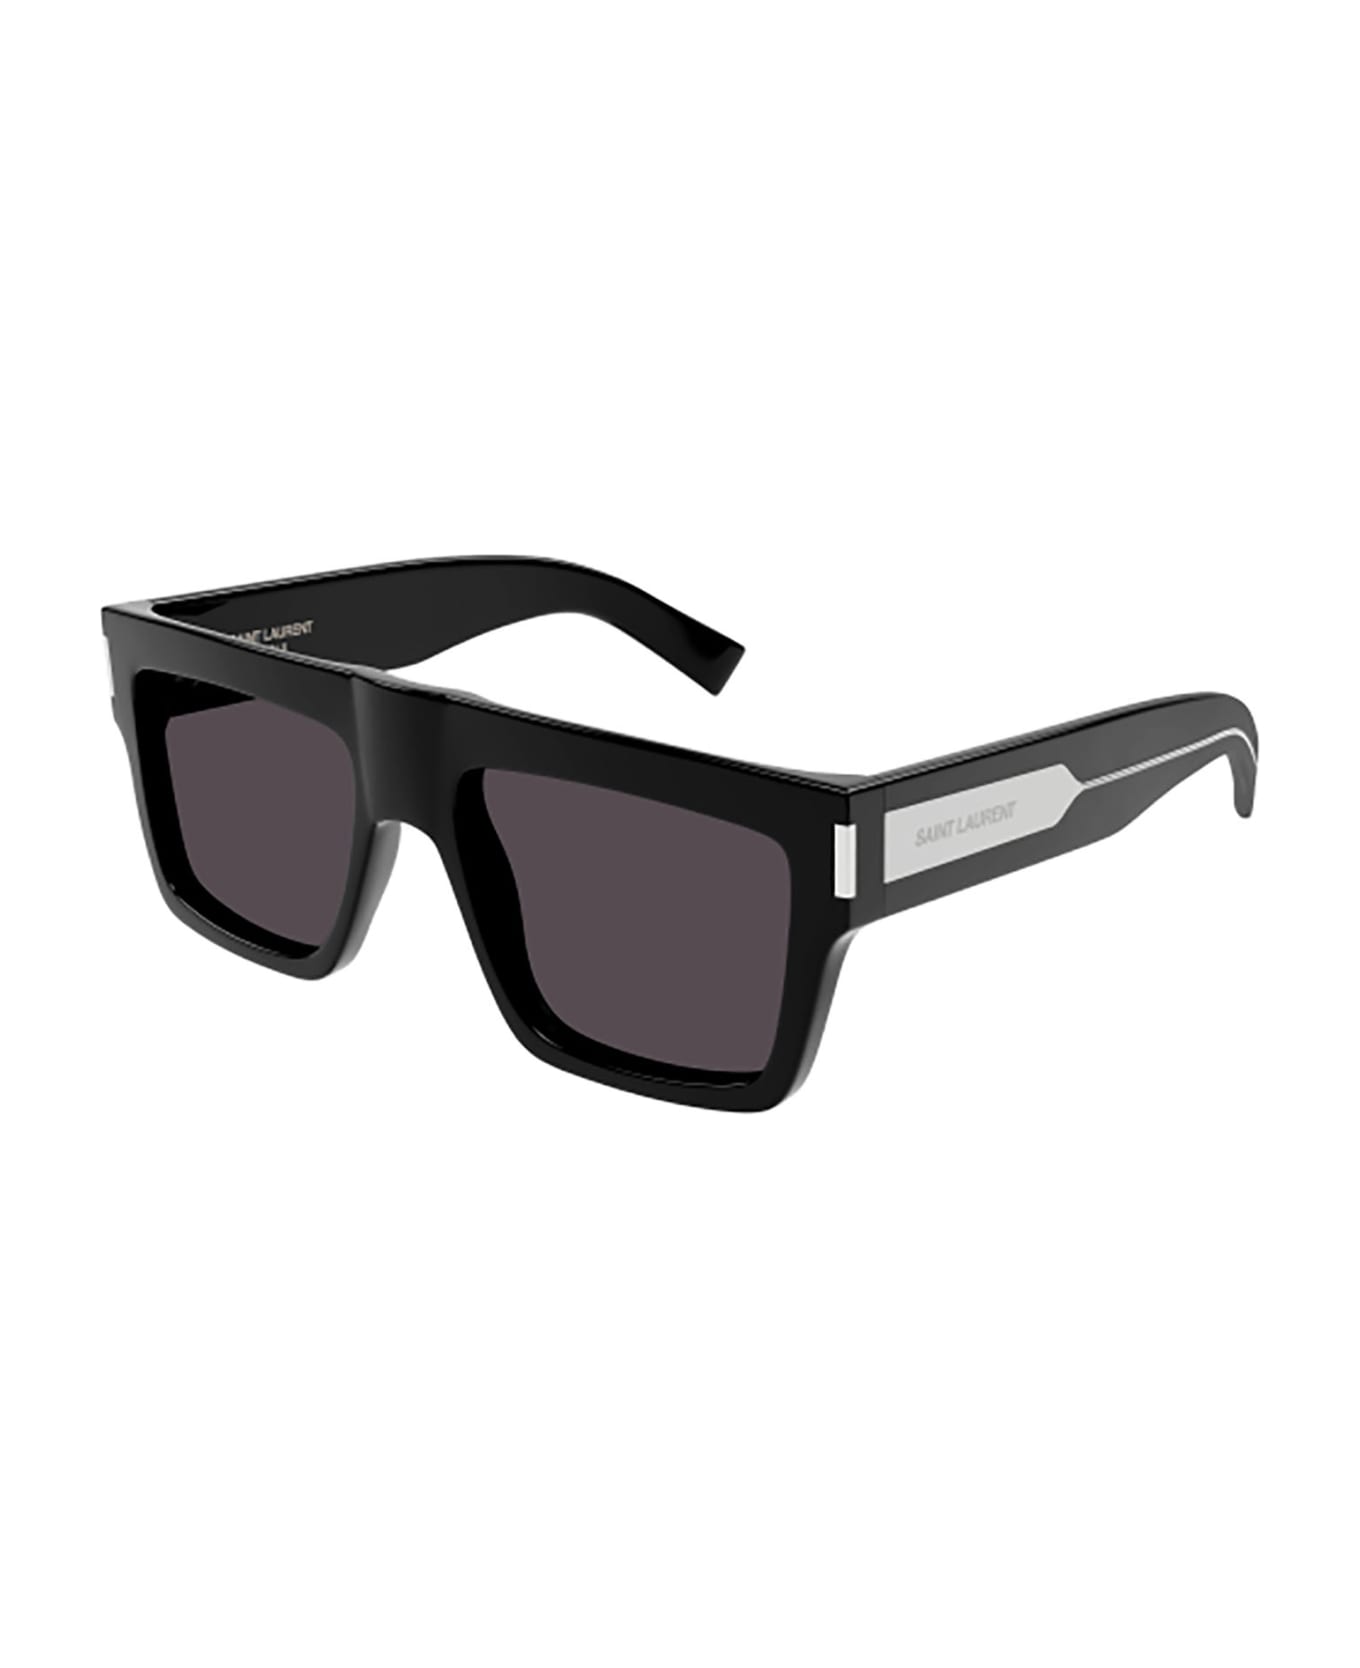 Saint Laurent Eyewear Sl 628 Sunglasses - 001 black crystal black